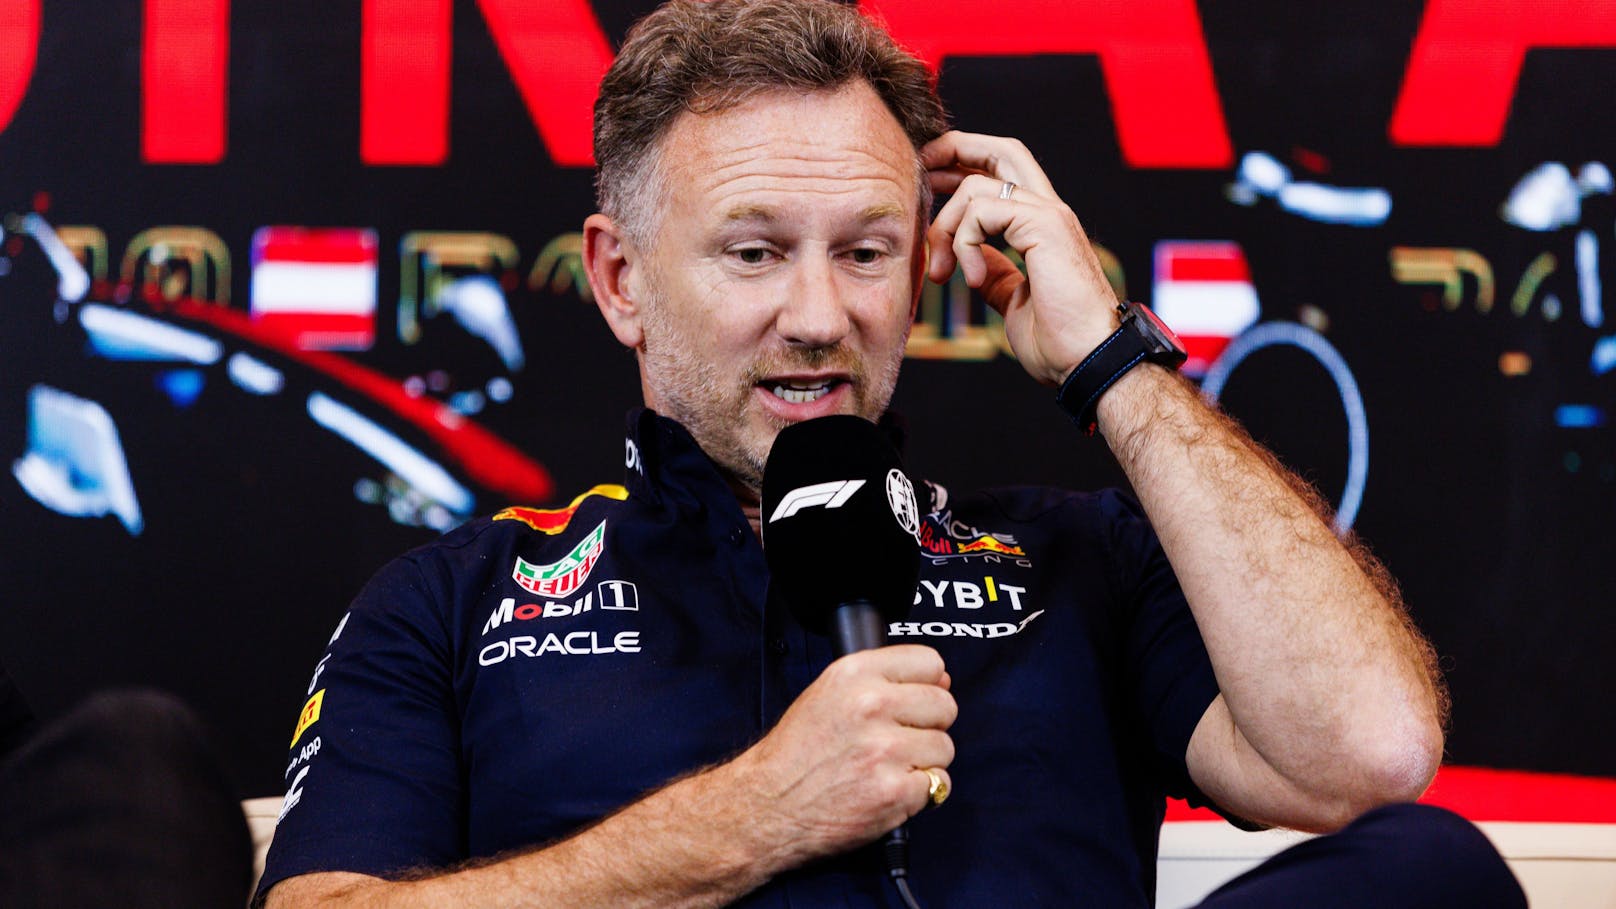 Red-Bull-Teamchef Horner wehrt sich: "Das ist verrückt"